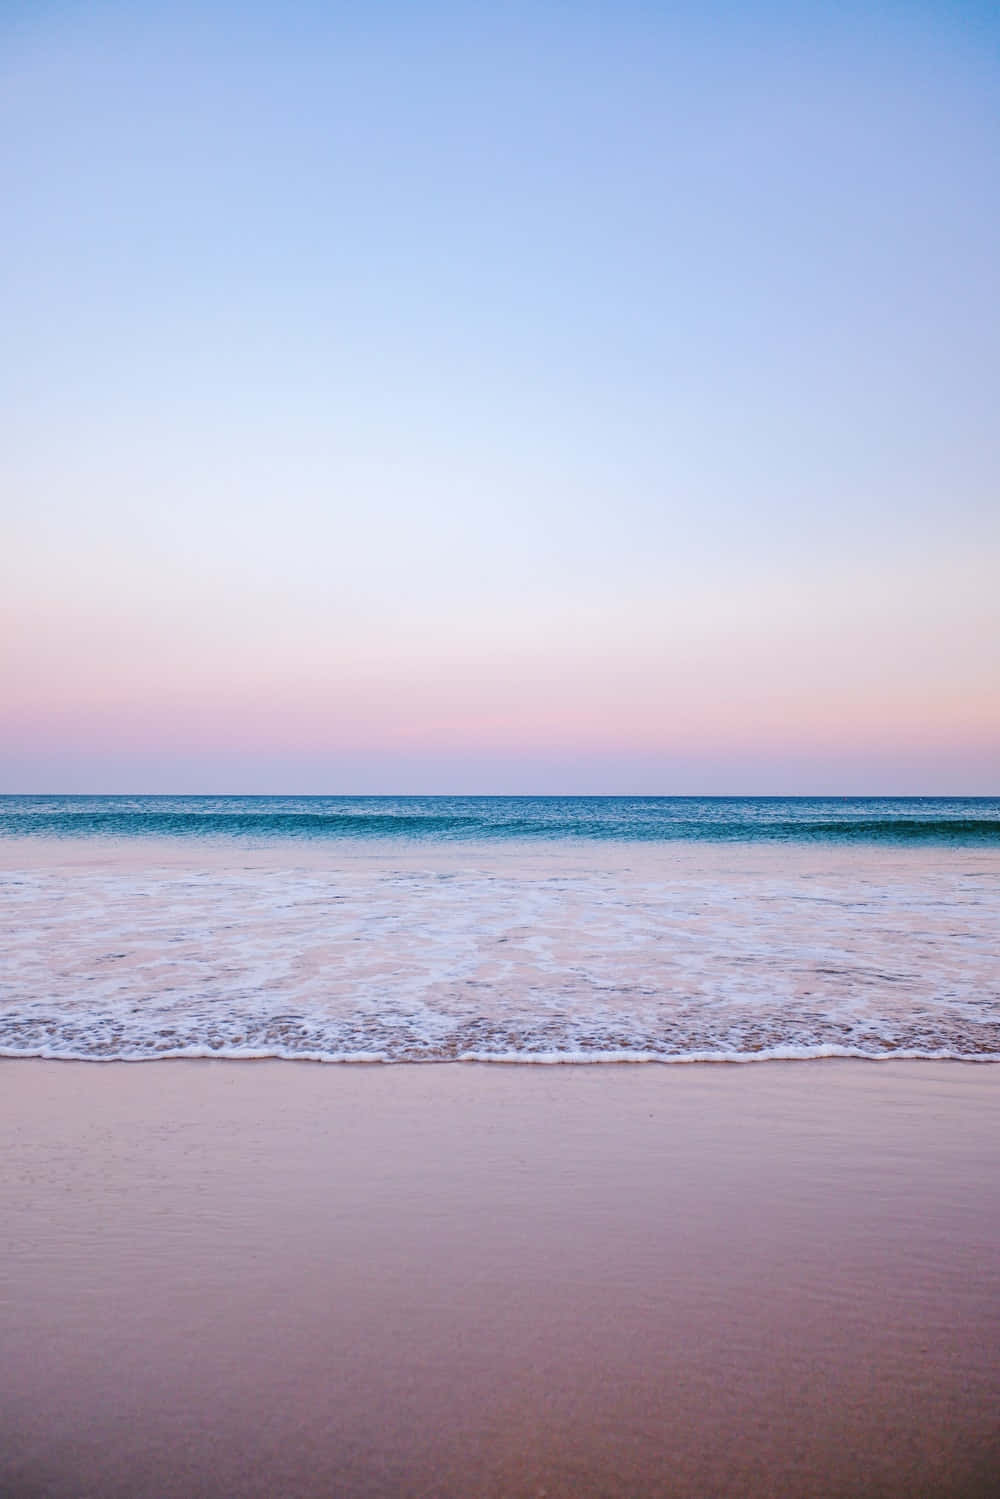 Relájateen La Tranquila Playa De Colores Pasteles, Perfecta Para Los Días De Verano. Fondo de pantalla